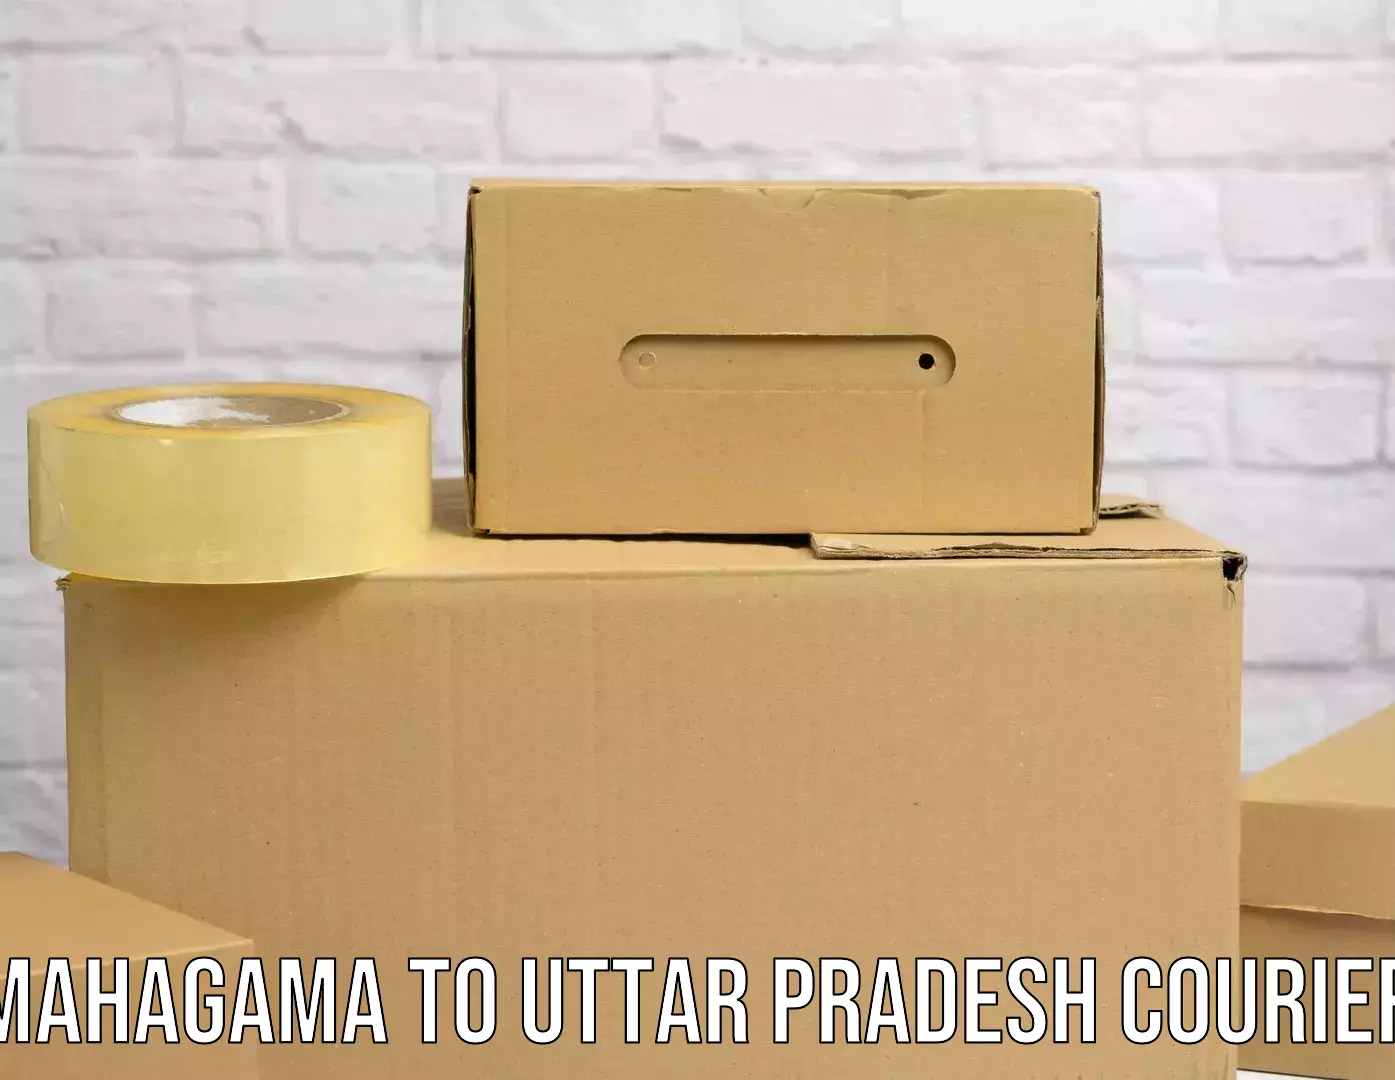 Same-day delivery options Mahagama to Pahasu